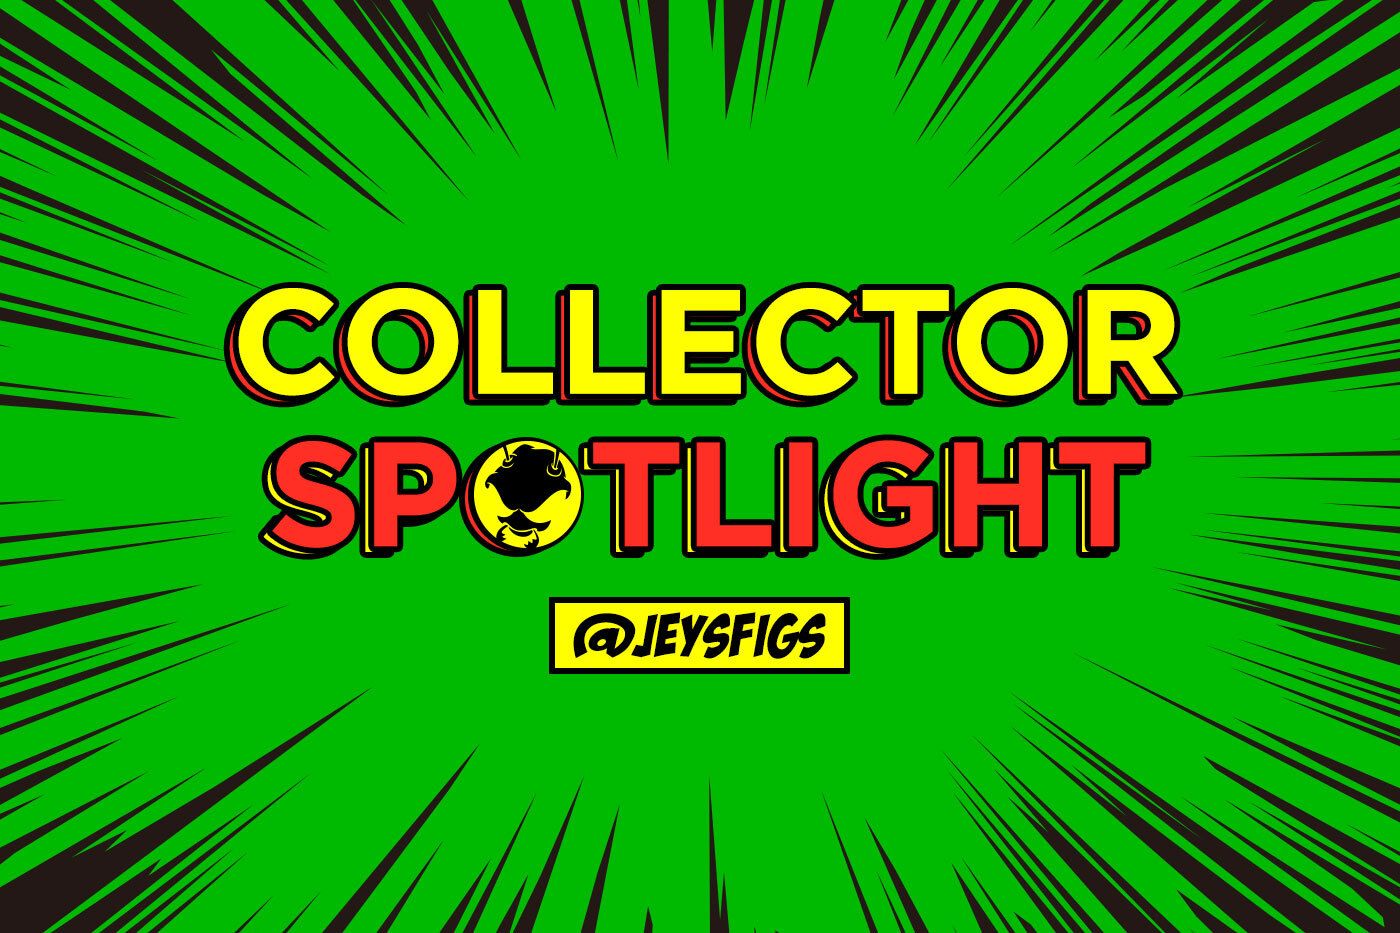 Collector Spotlight Vol 7. - @jeysfigs